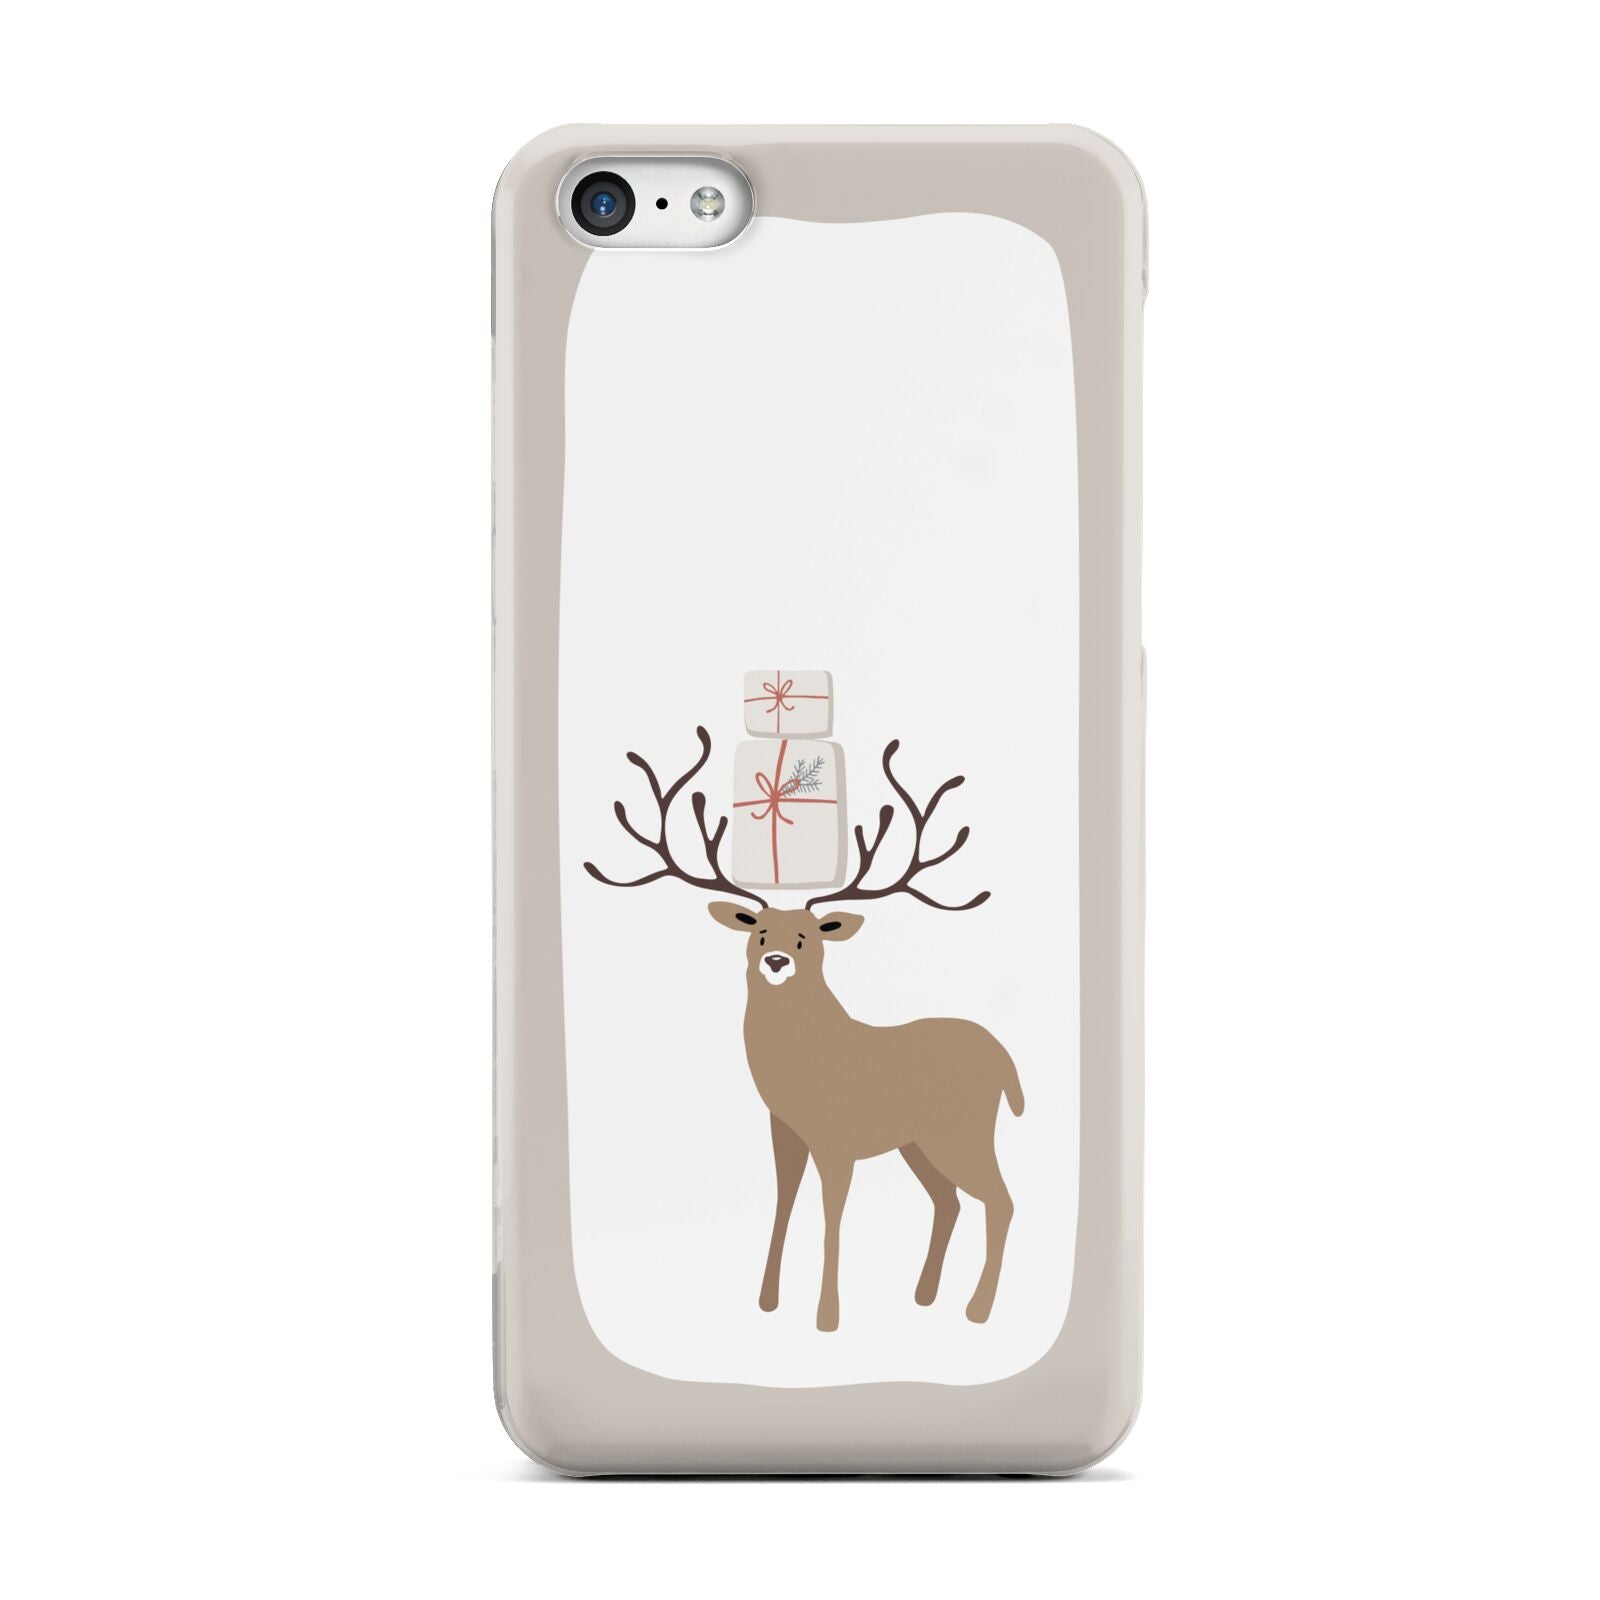 Reindeer Presents Apple iPhone 5c Case